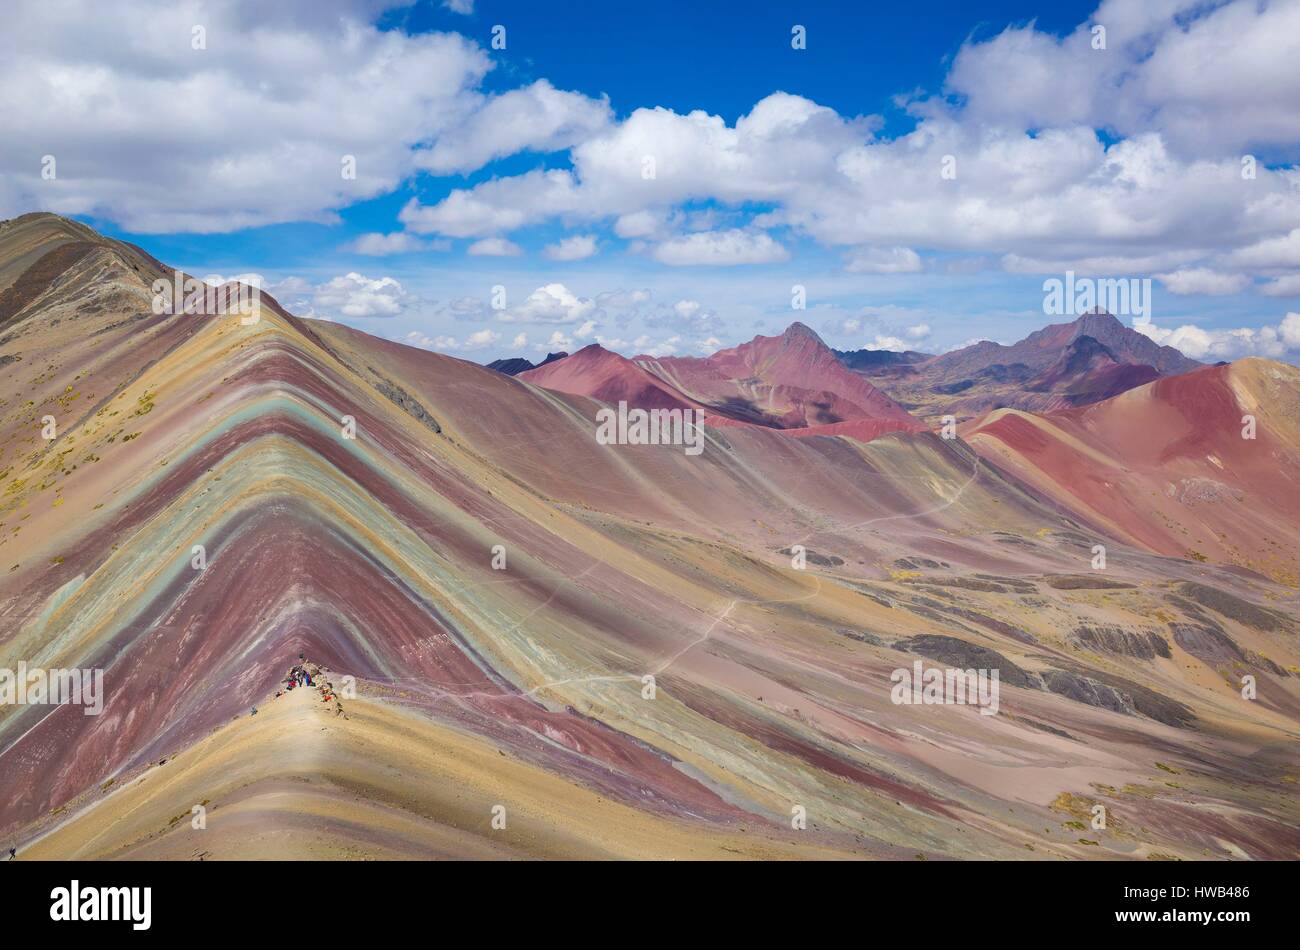 Pérou, région de Cusco, cordillère des Andes, de l'Ausangate, le Winicunca aussi connu sous le nom de Rainbow mountain est un gelological étonnant situé au 4800 mètres au-dessus du niveau de la mer, et créé par l'érosion et l'oxydation des roches sedimental Banque D'Images